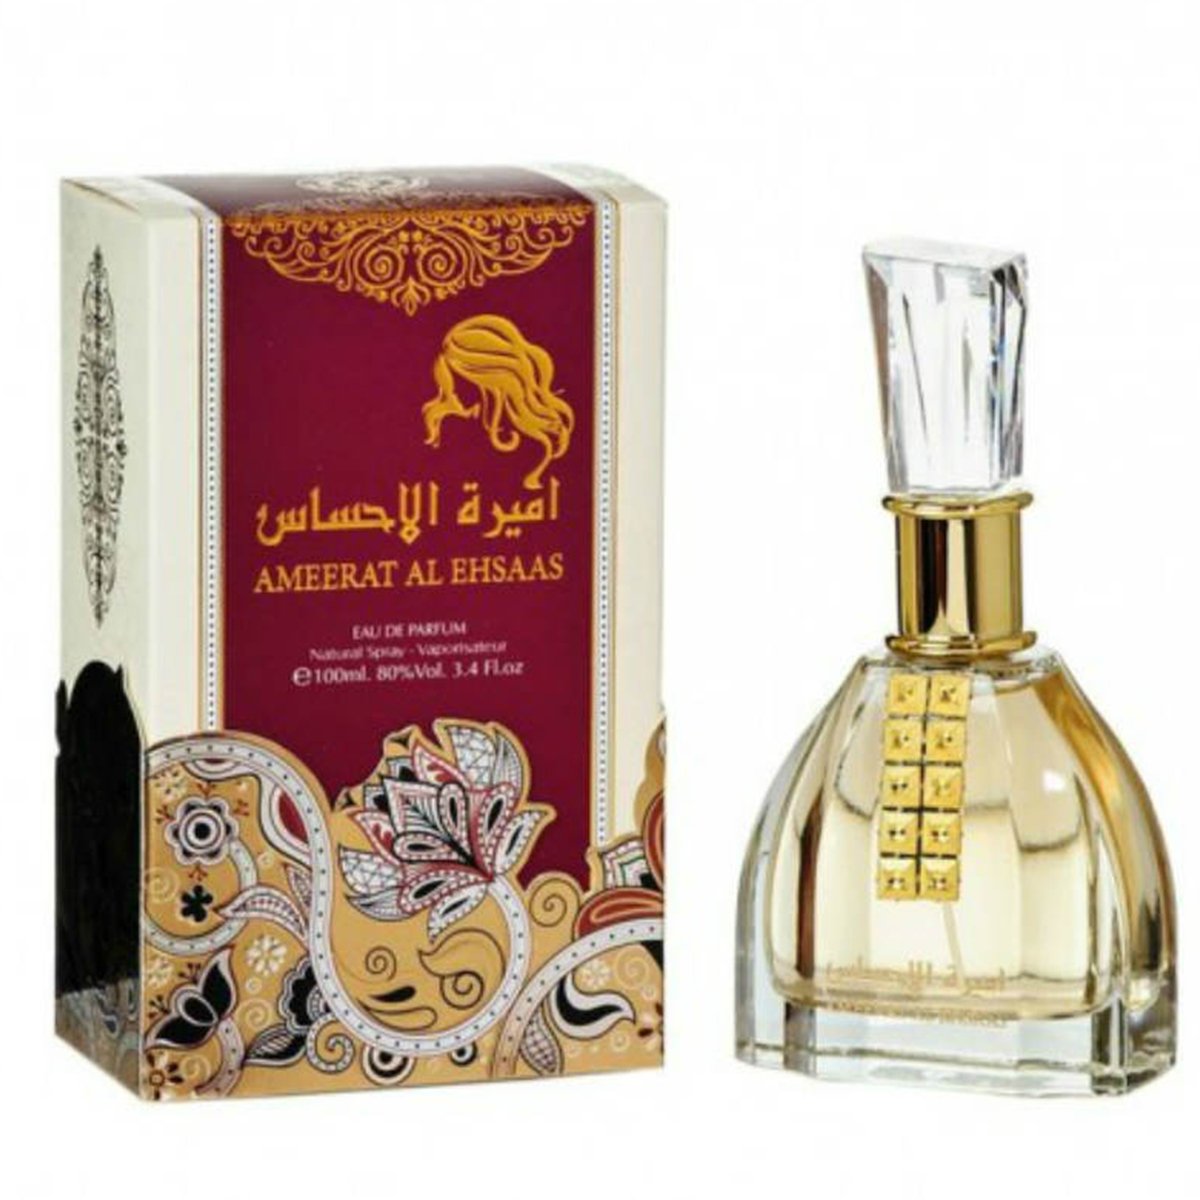 Ameerat Al Ehsaas Eau de Parfum 100ml Ard Al Zaafaran-almanaar Islamic Store